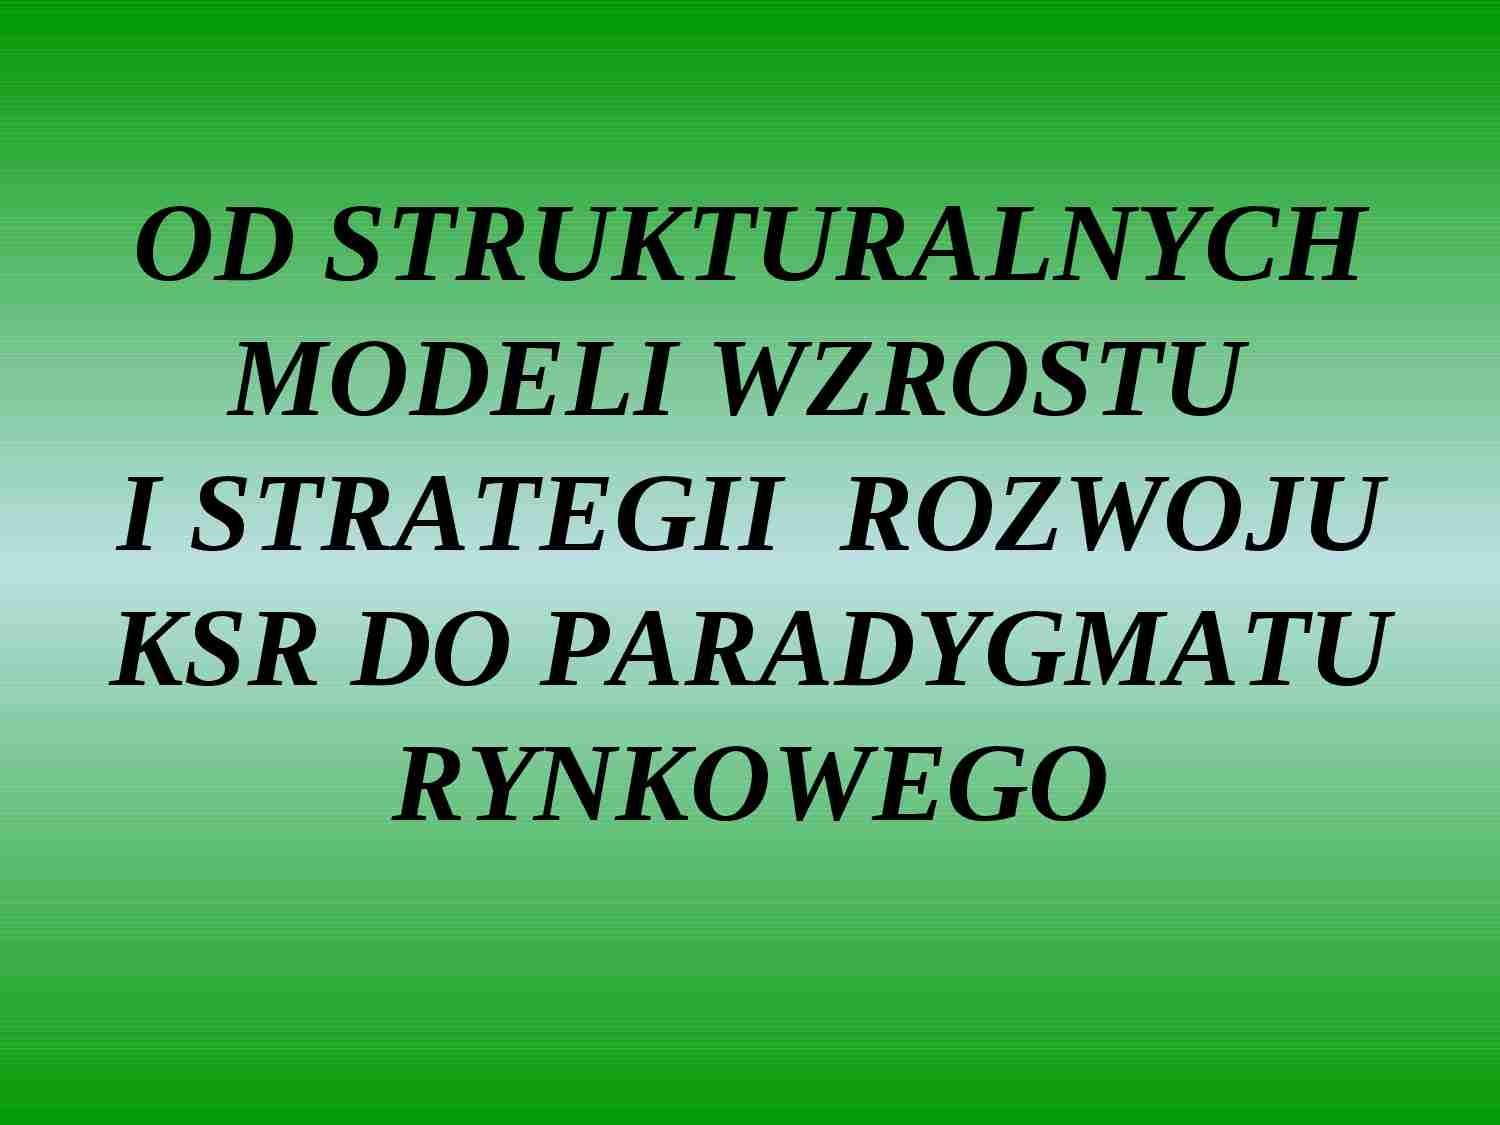 Od strukturalizmu do paradygmatu rynku - strona 1